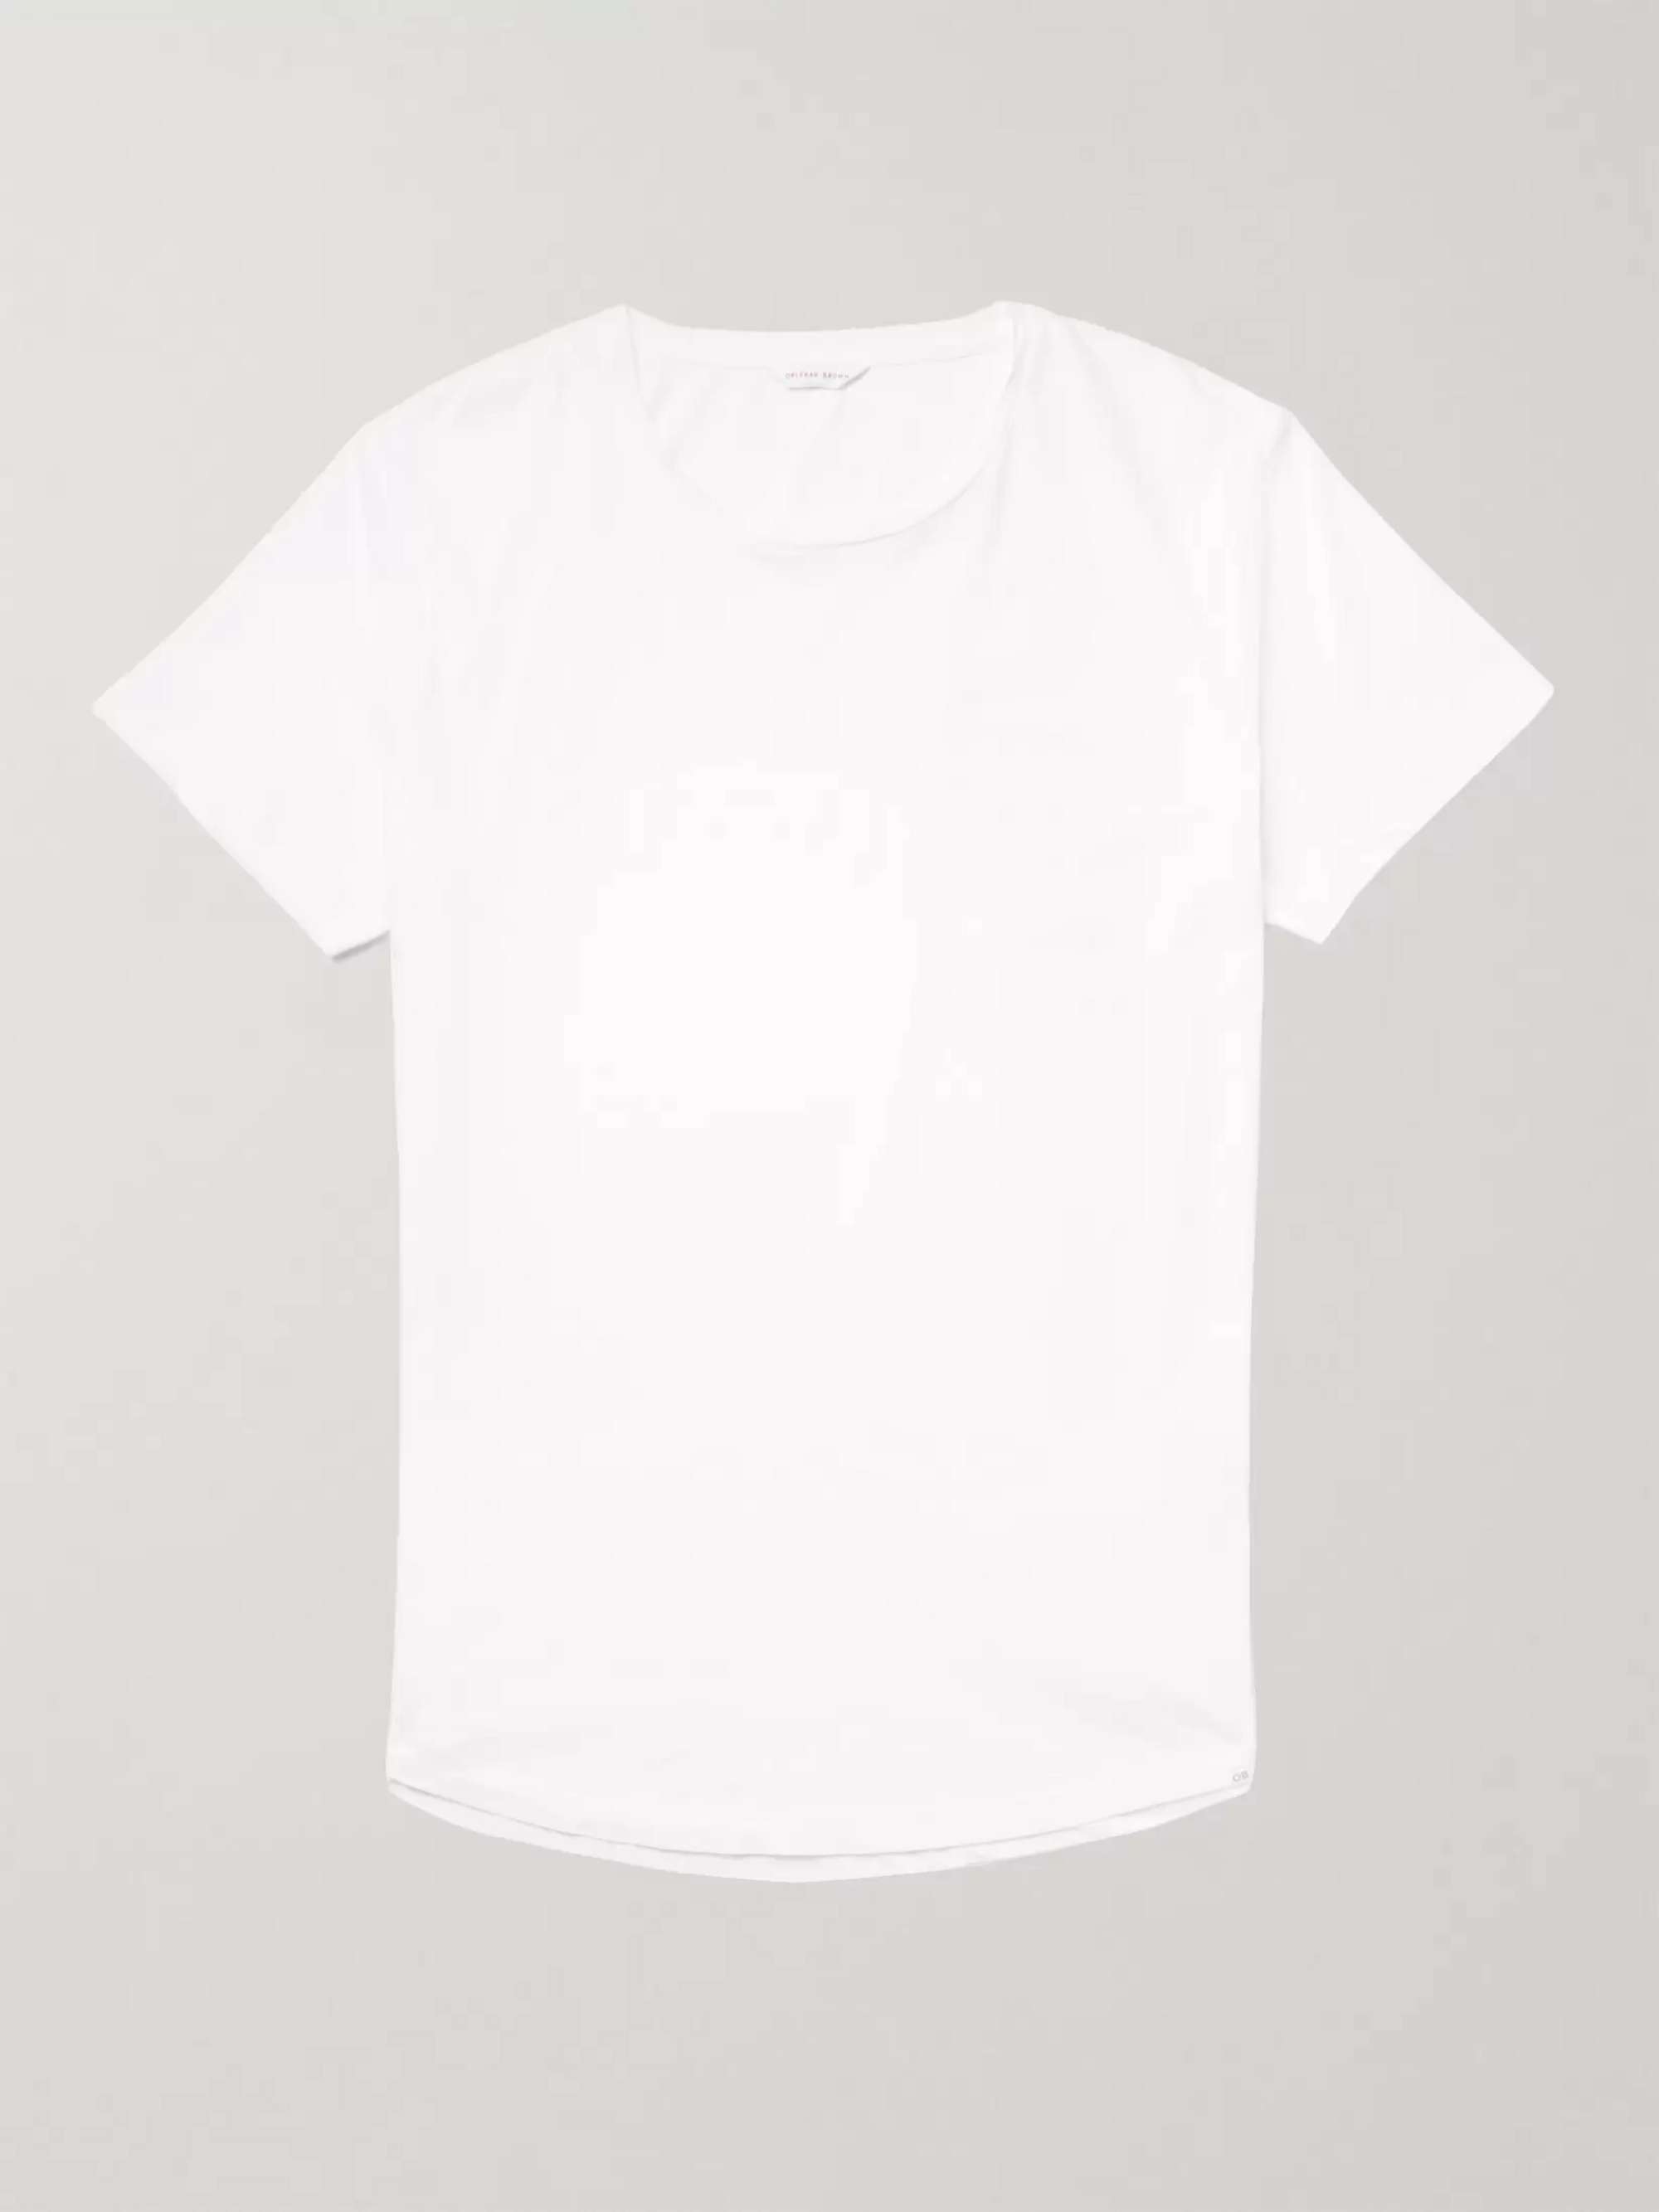 Carhartt WIP Home T-shirt for Men